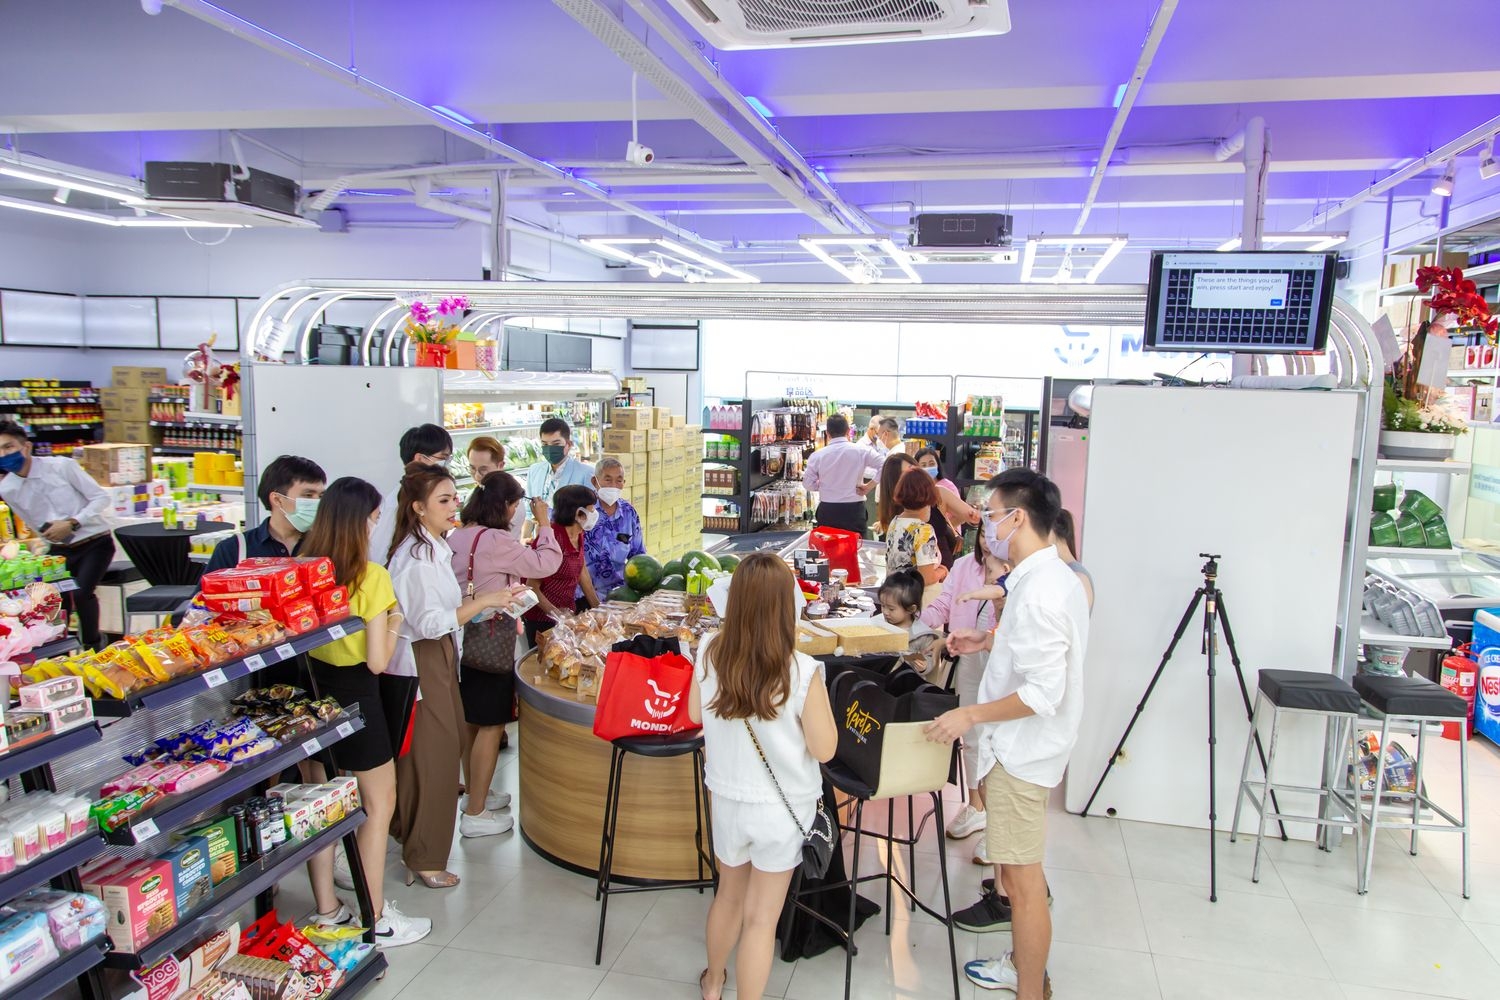 Mondo Smart Store Bukit Jalil Grand Opening on 29 Oct 2022